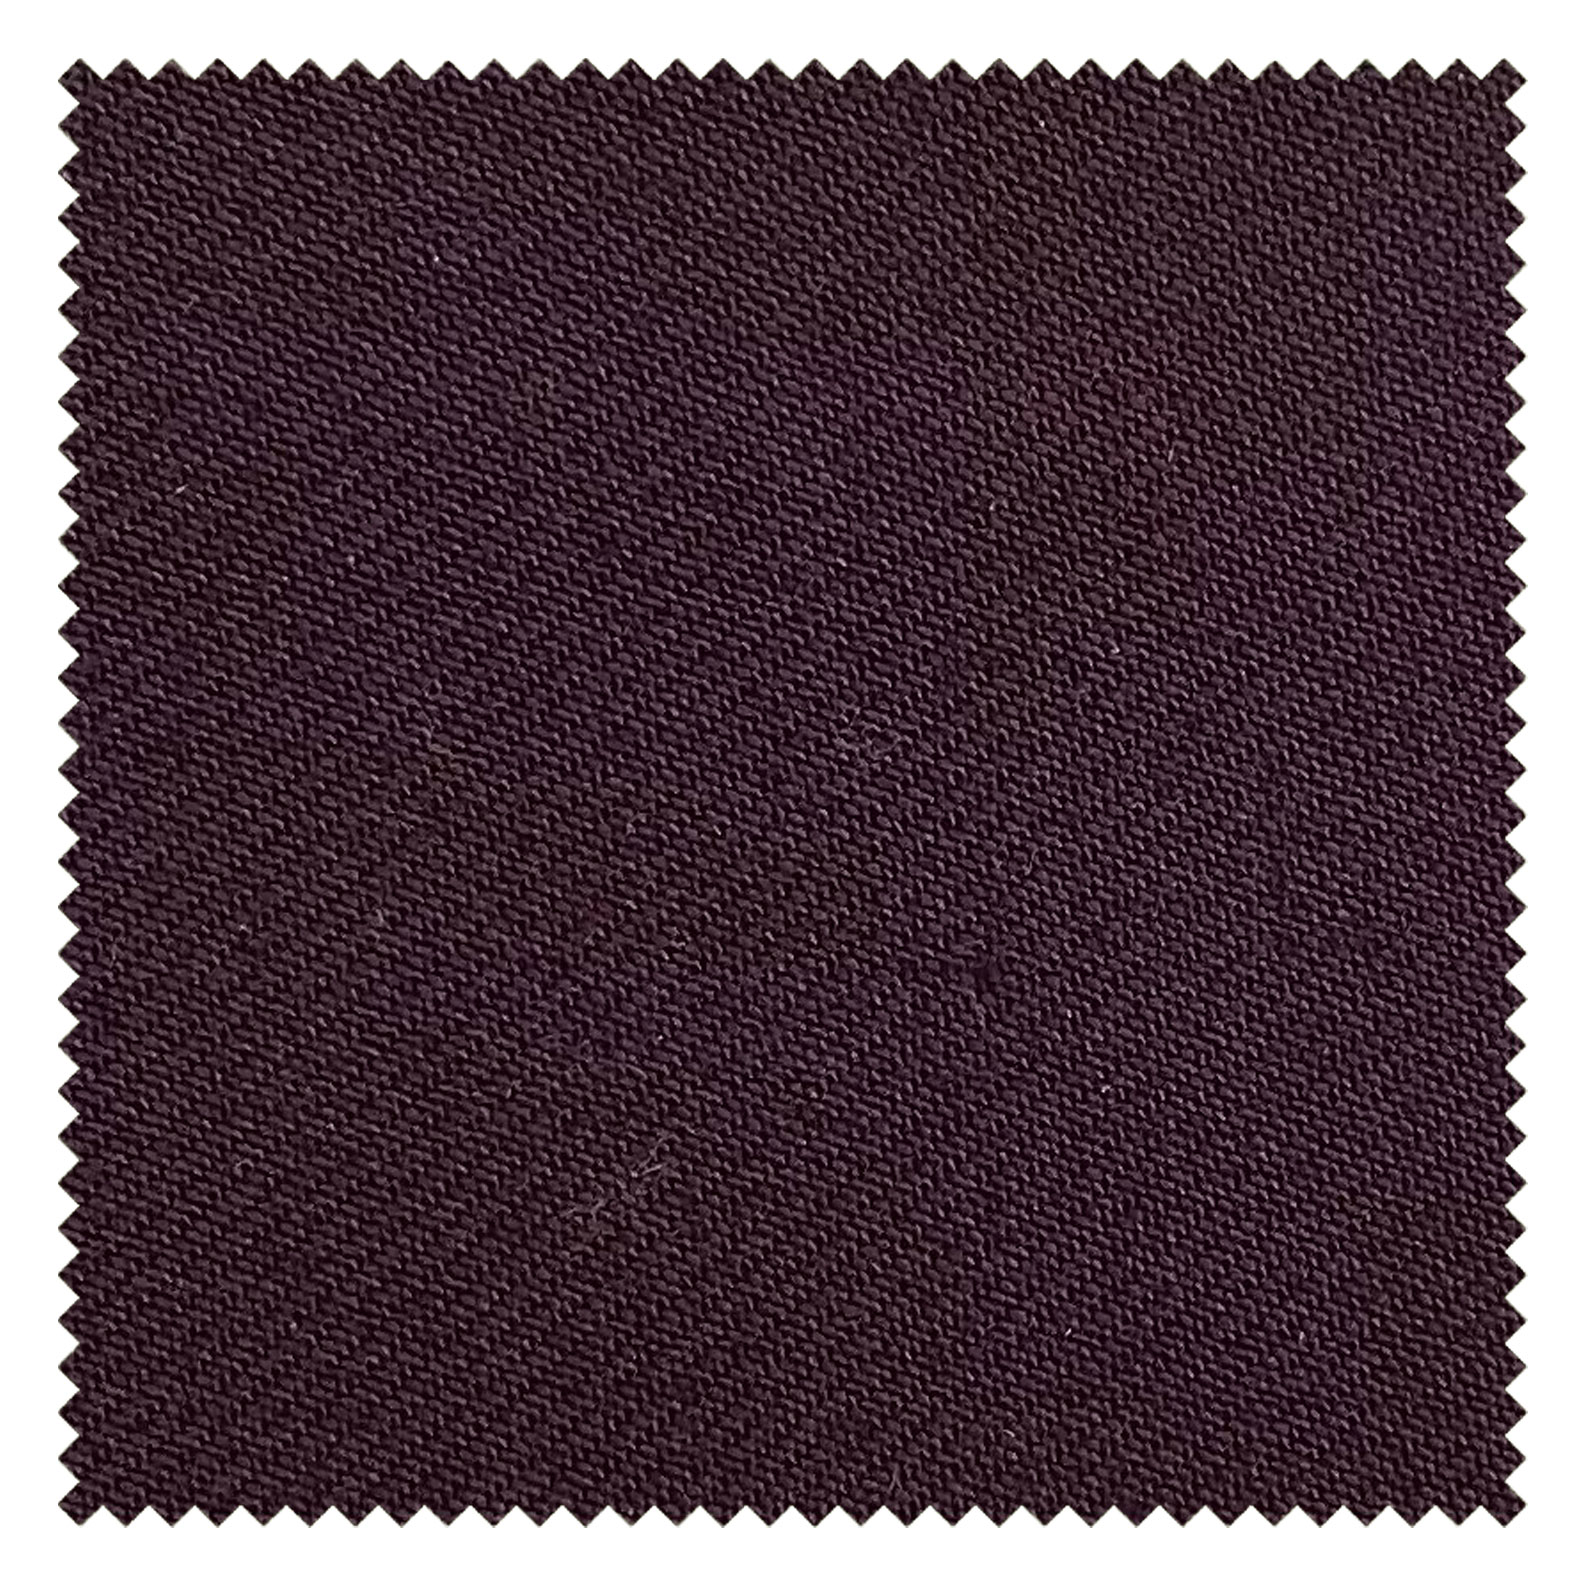 KINGMAN Cashmere Wool Fabric Royal Elegant MAHOGANY ผ้าตัดชุดสูท สีมะฮอกกานี กางเกง ผู้ชาย ผ้าตัดเสื้อ ยูนิฟอร์ม ผ้าวูล ผ้าคุณภาพดี กว้าง 60 นิ้ว ยาว 1 เมตร